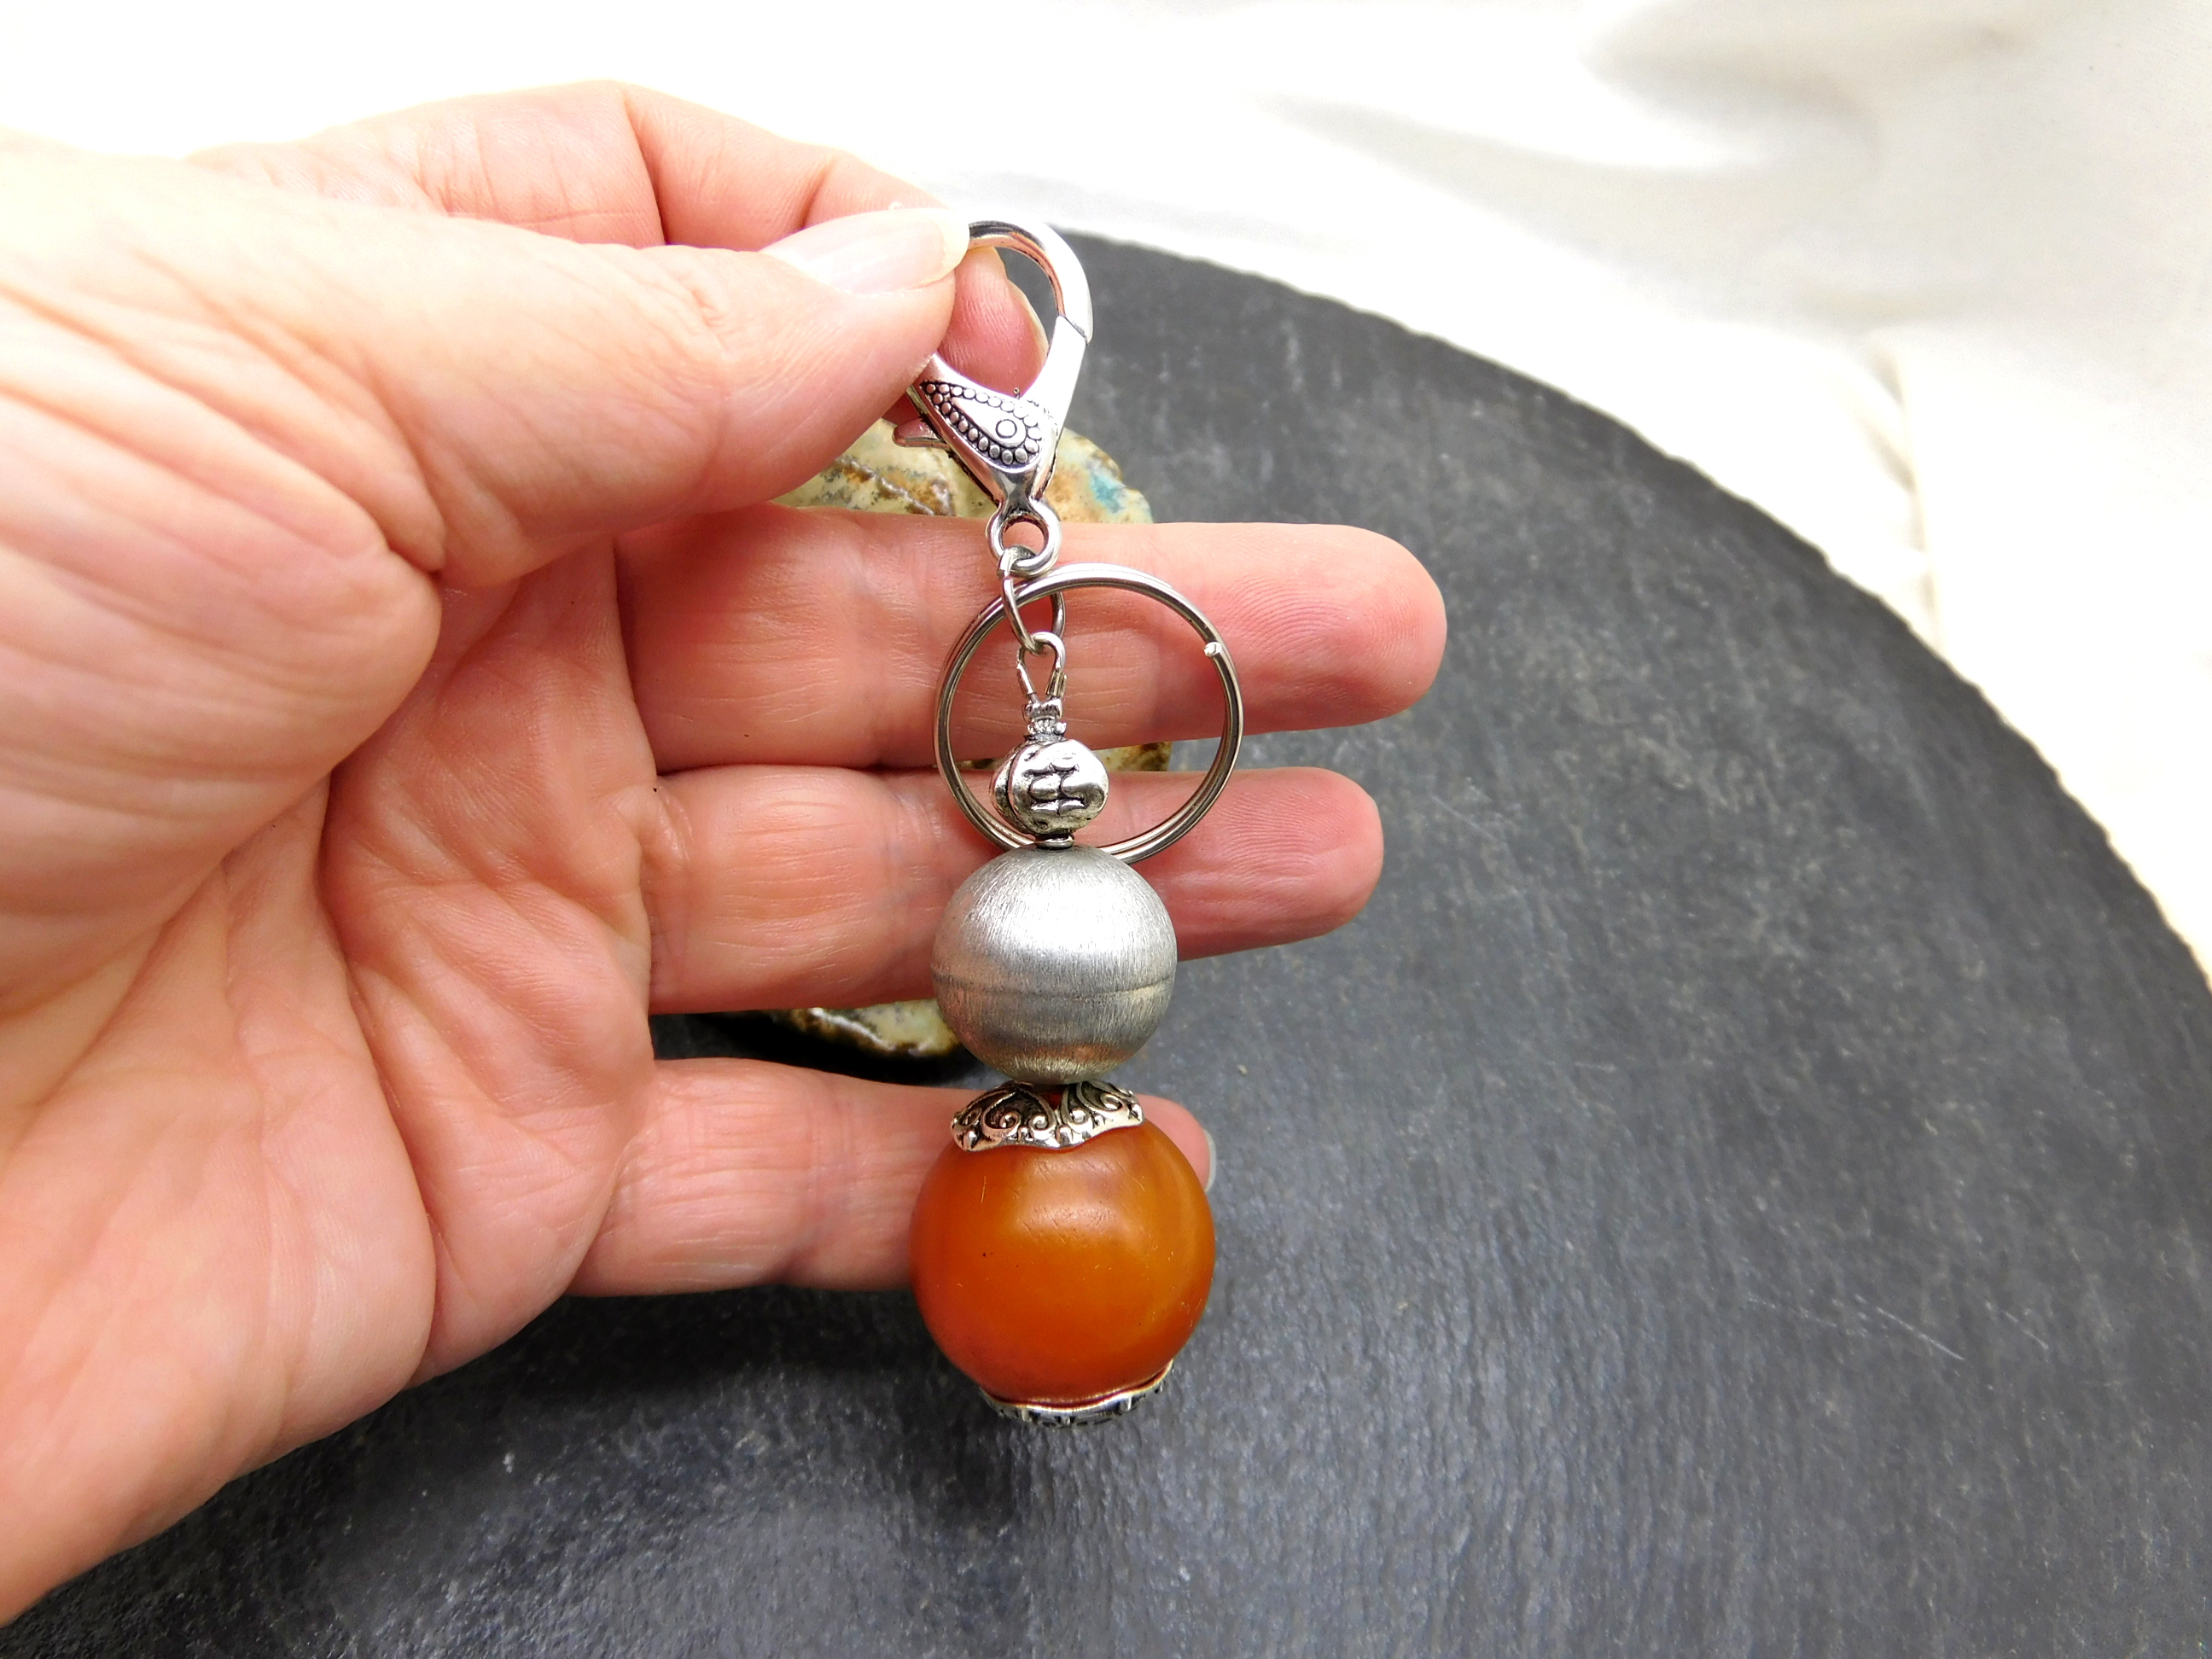 Schlüsselanhänger / Taschenbaumler im Ethno-Stil mit großer Amber Perle